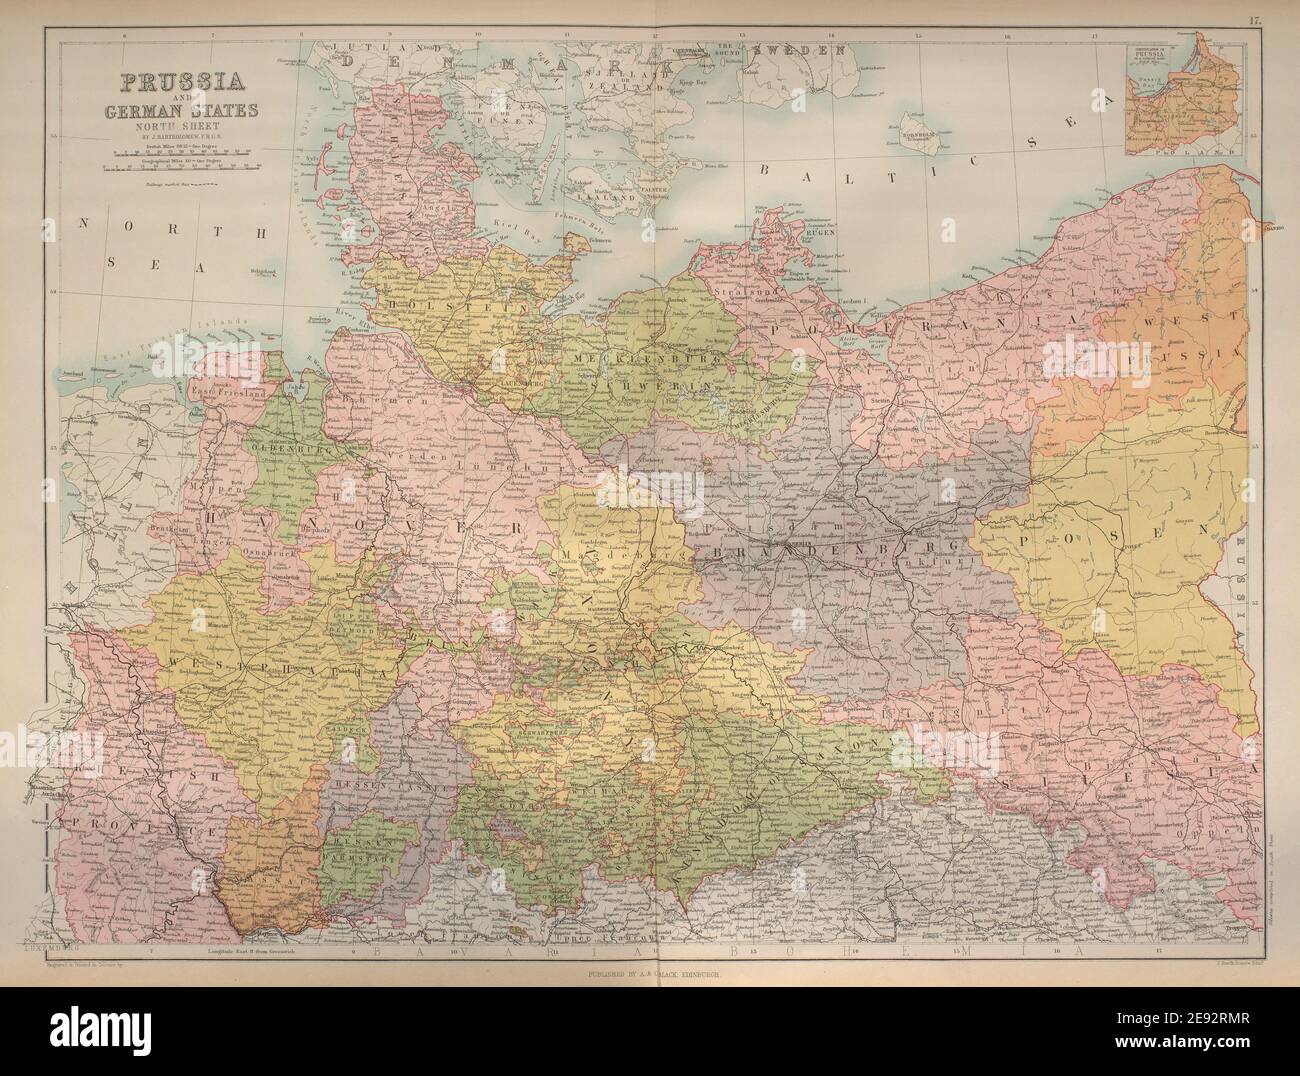 Prusia y los estados del norte de Alemania. Alemania y Polonia. BARTHOLOMEW 1870 mapa antiguo Foto de stock